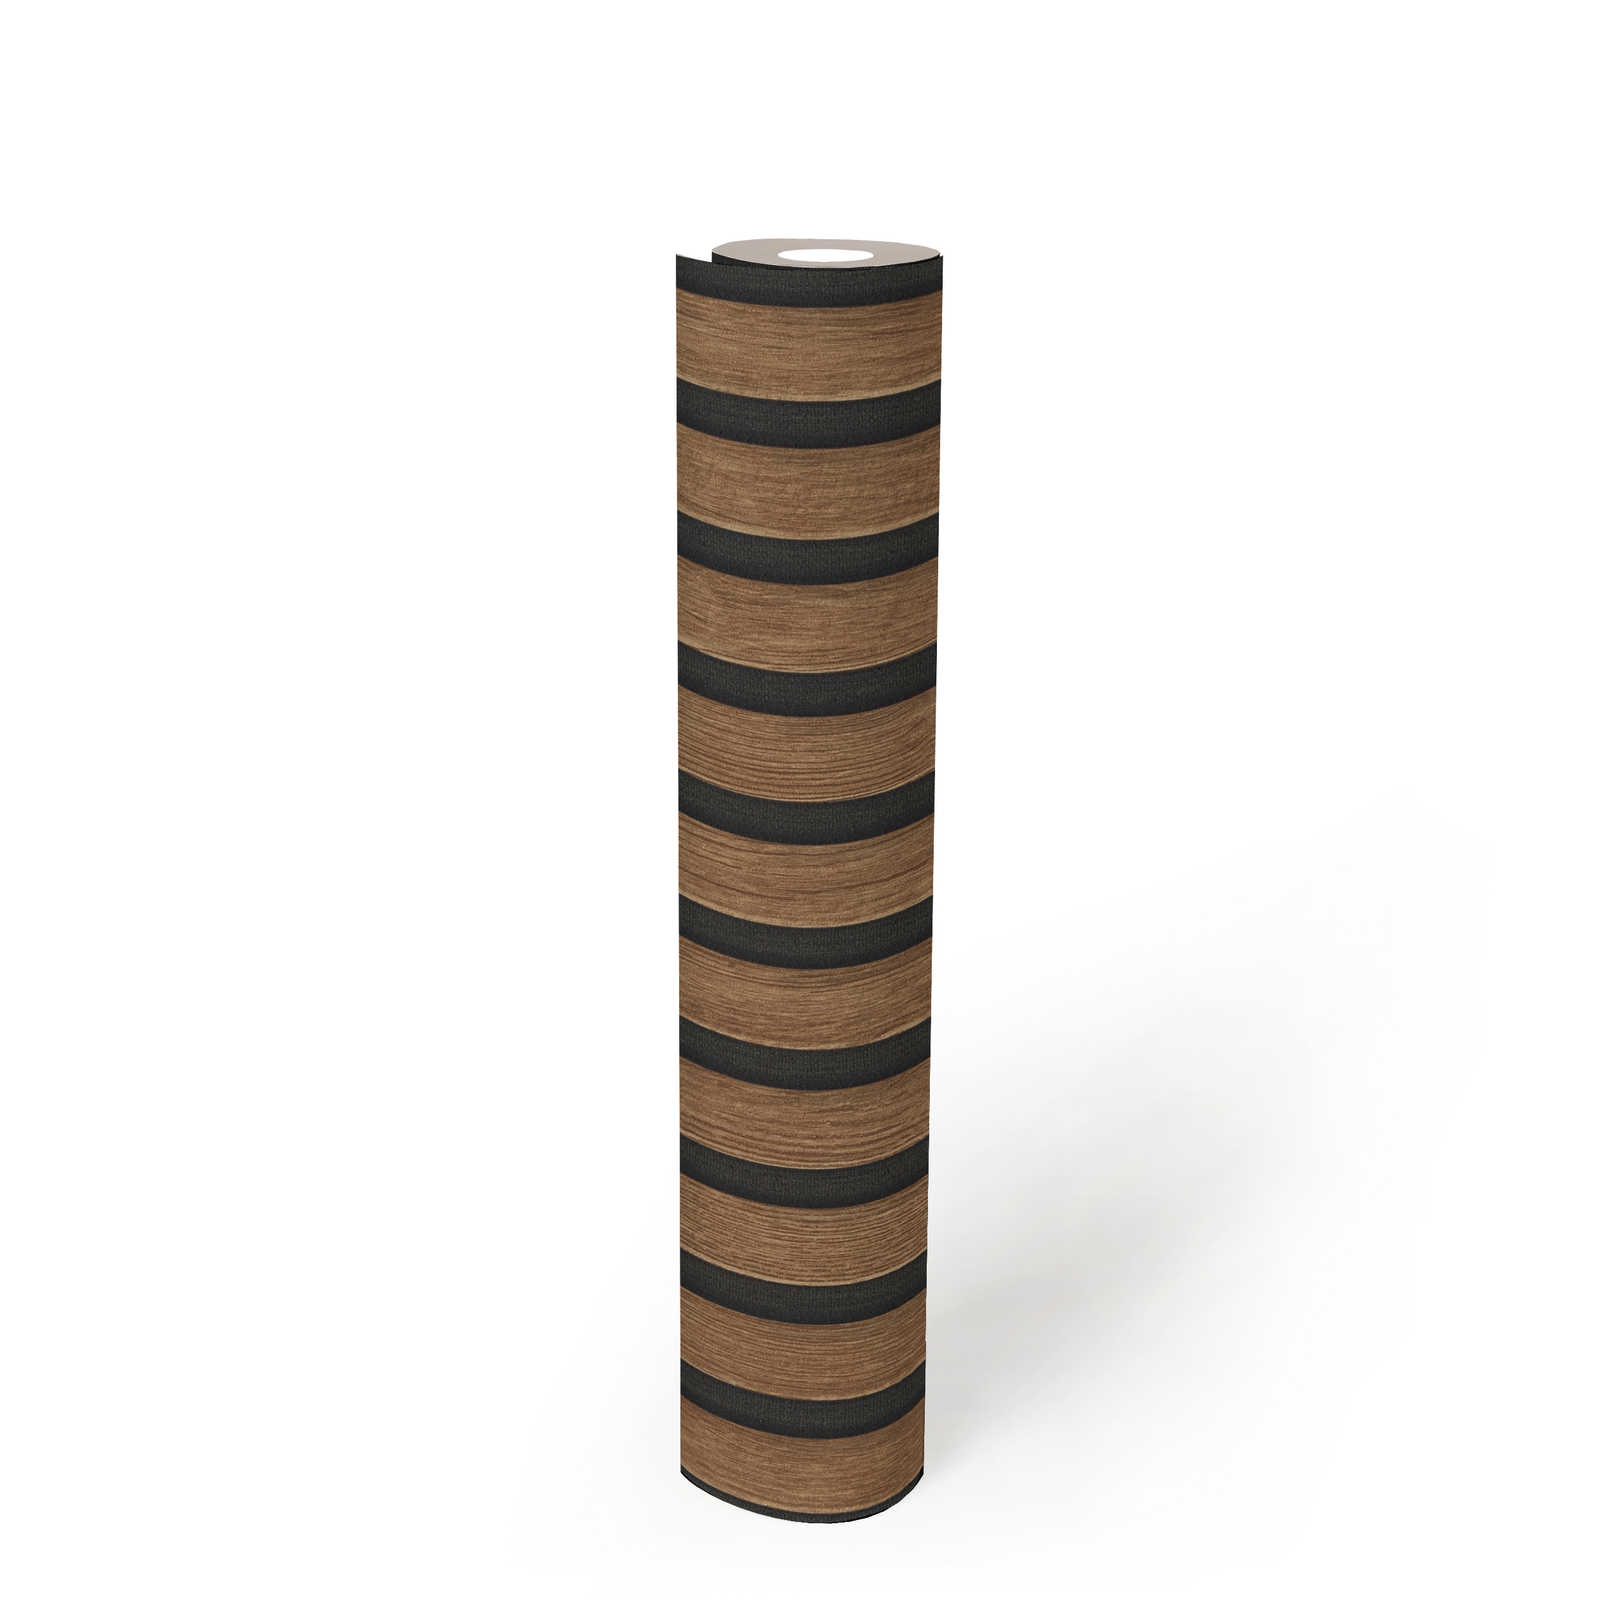             Akoestische panelen vliesbehang realistische houtlook - Bruin, Zwart
        